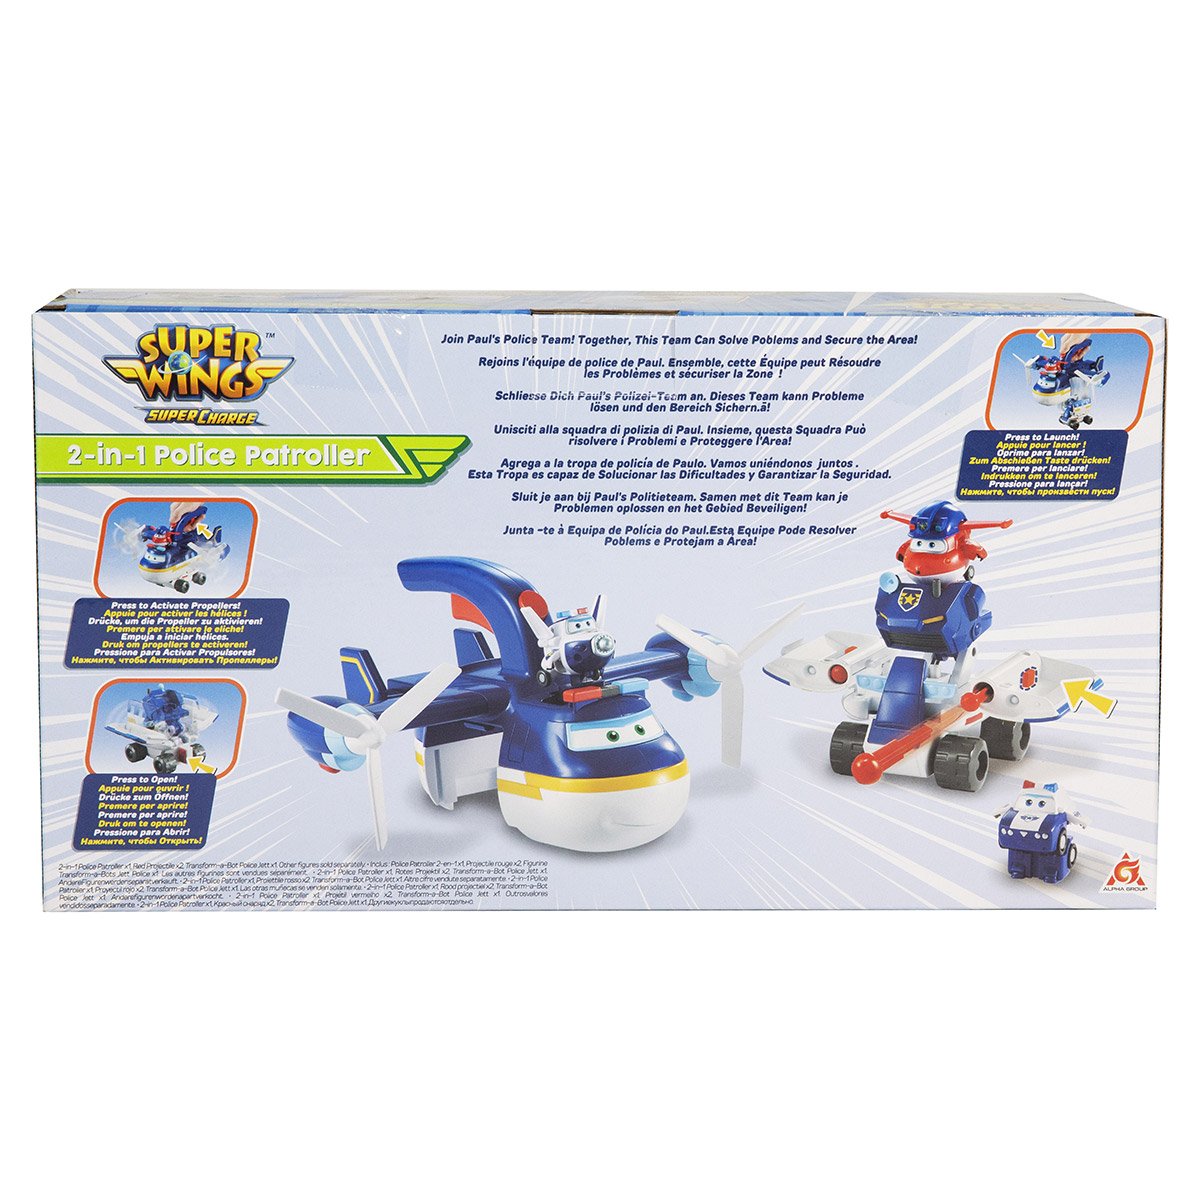 Super wings – avion jouet police patroller + 1 figurine jett